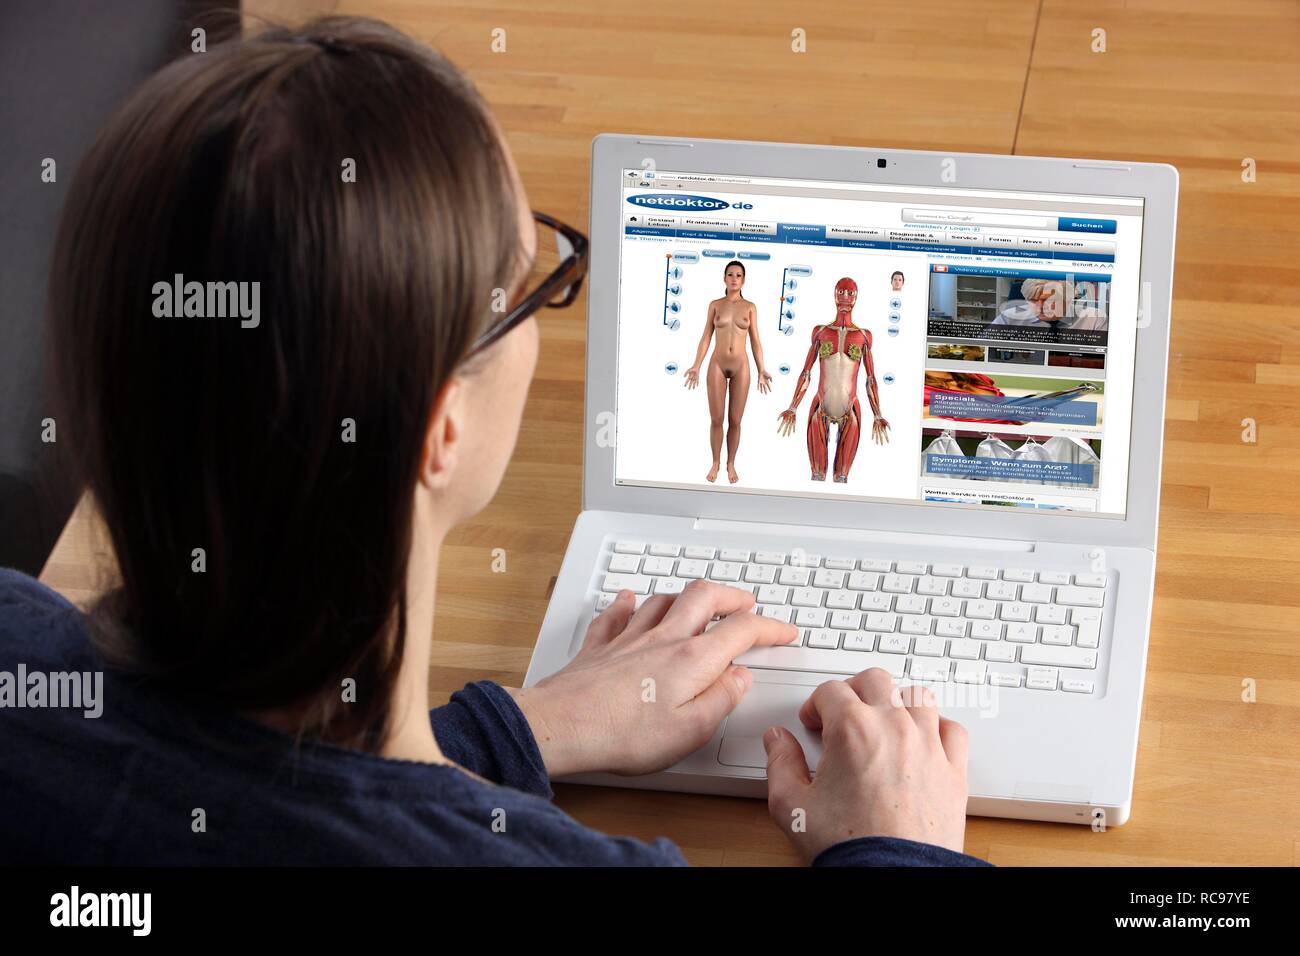 Frau das Surfen im Internet mit einem Laptop, medizinische Website, Netdoktor, on-line-Führer für Fragen der Gesundheit, der Analyse von Symptomen Stockfoto